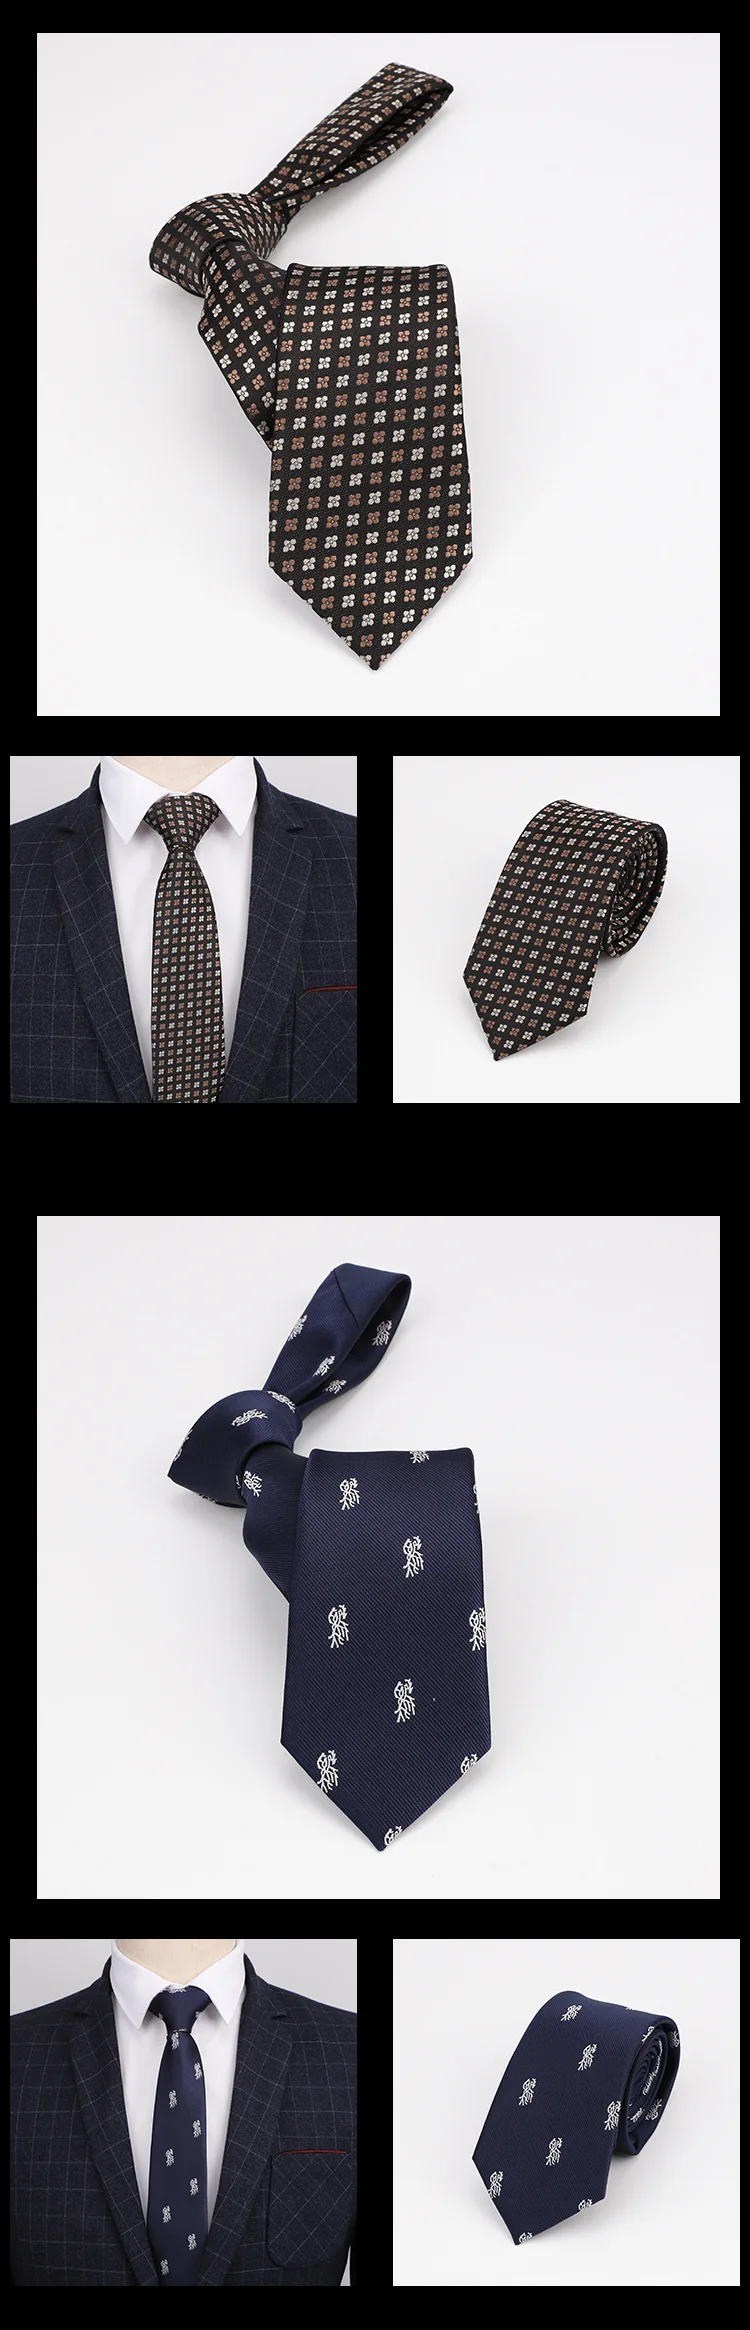 7 см обтягивающие модные галстуки в горошек мужские тонкие галстук из полиэстера в горошек Галстуки для джентльменов